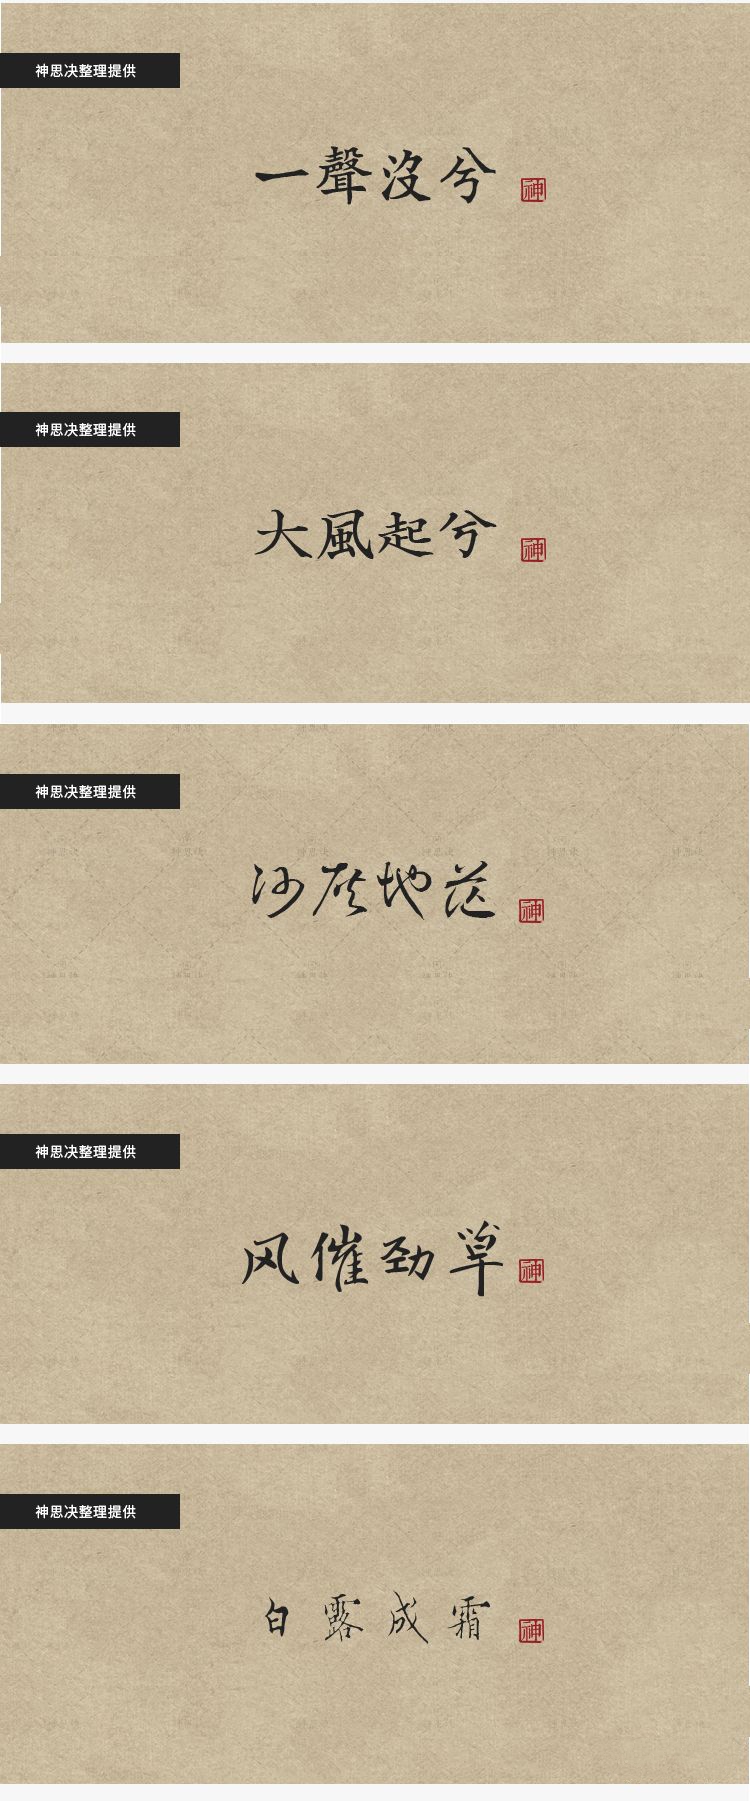 【195期】92款古韵中文字体，带你领略文字的美